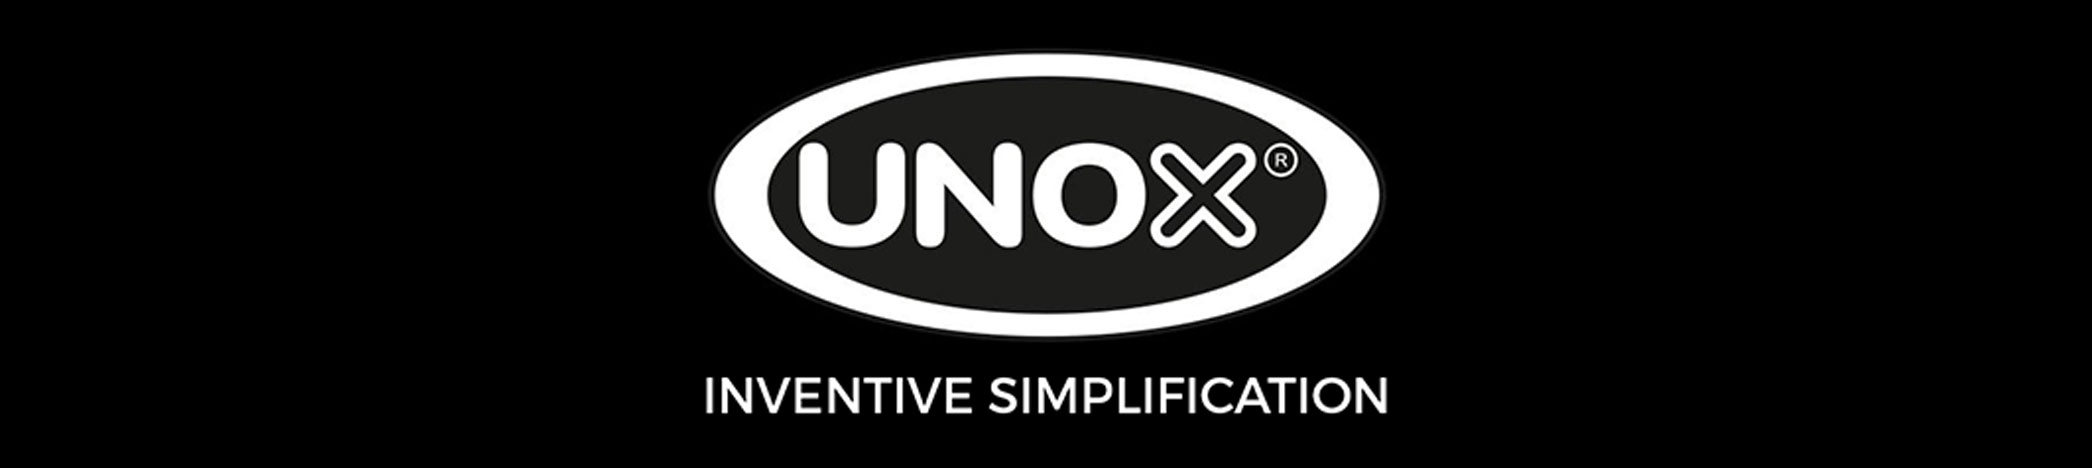 unox-website-banner.jpg